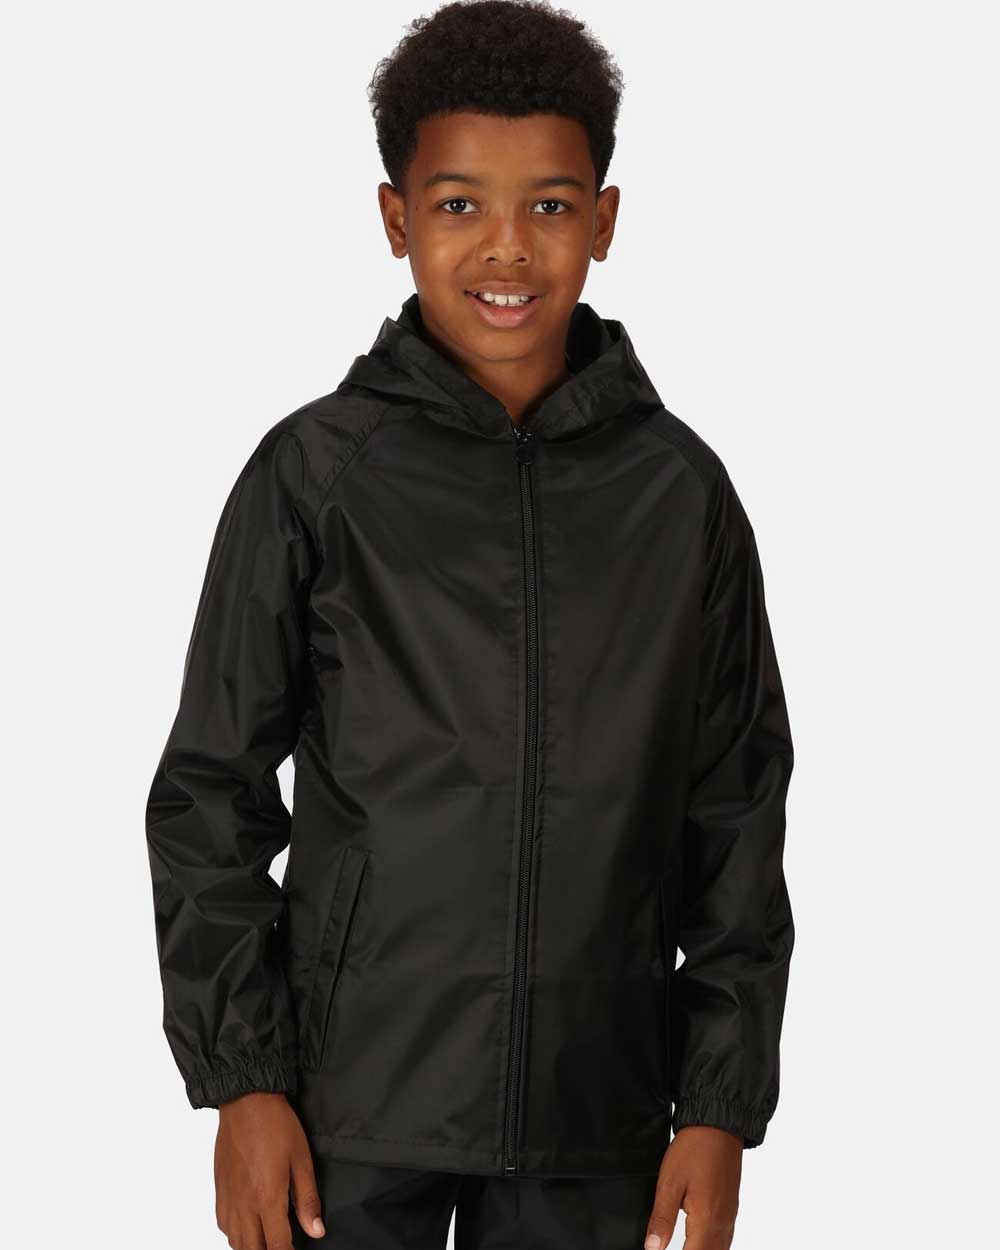 Regatta Kids Pro Stormbreak Waterproof Jacket In Black 